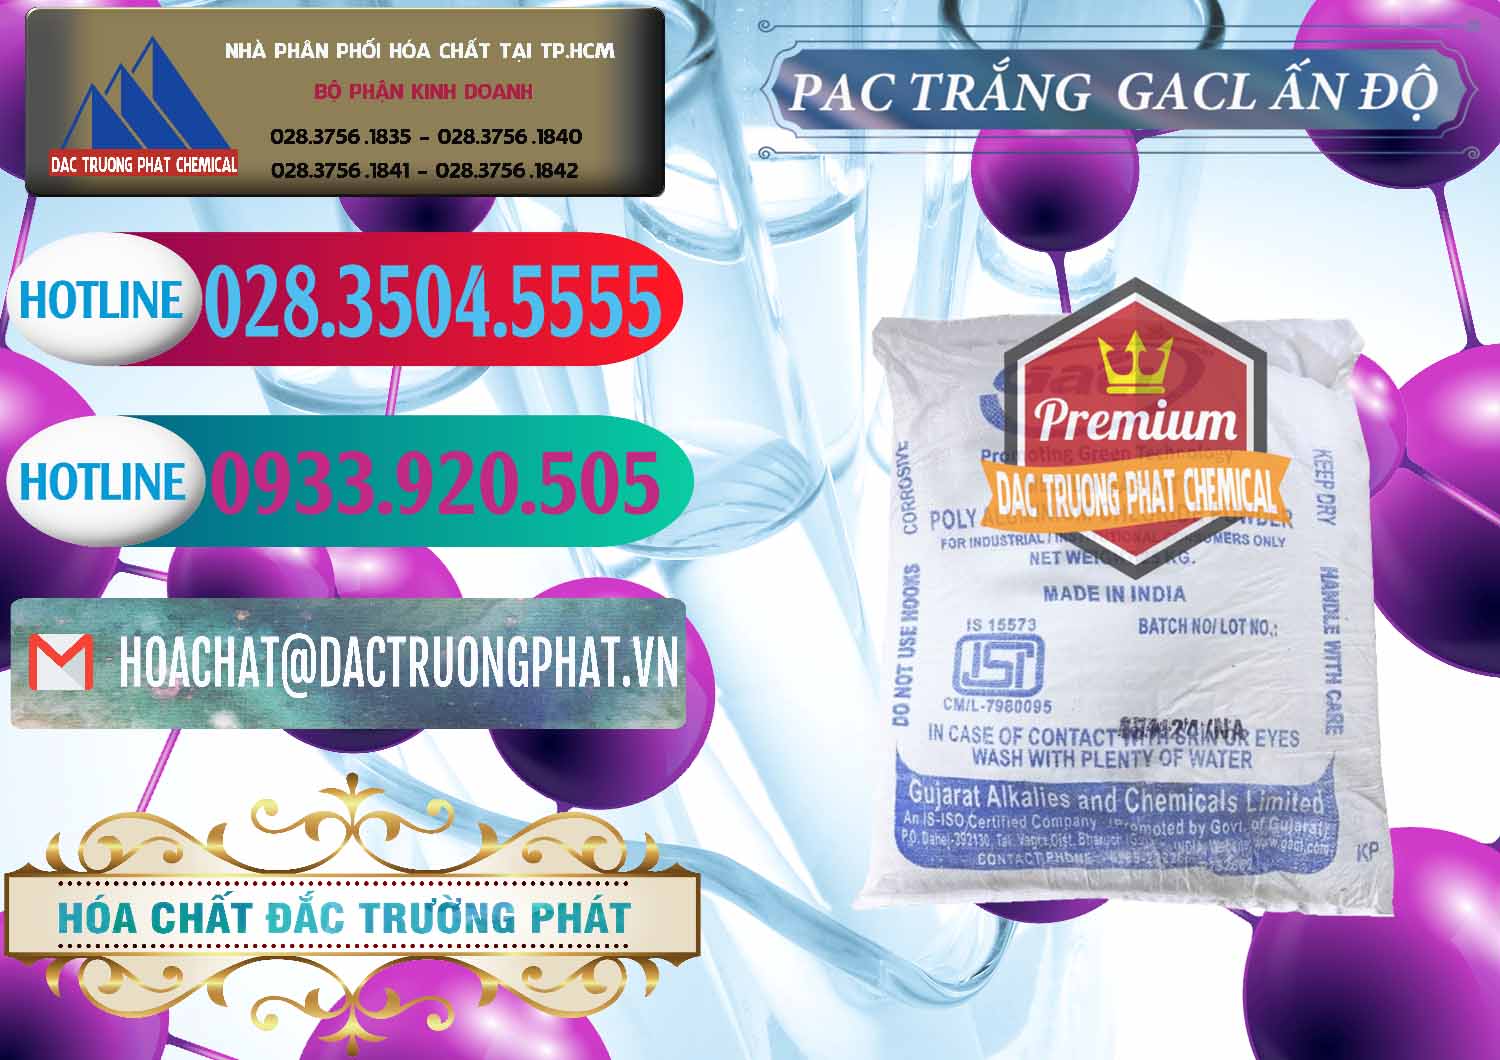 Nơi chuyên bán - cung cấp PAC - Polyaluminium Chloride Trắng GACL Ấn Độ India - 0266 - Chuyên nhập khẩu _ phân phối hóa chất tại TP.HCM - truongphat.vn